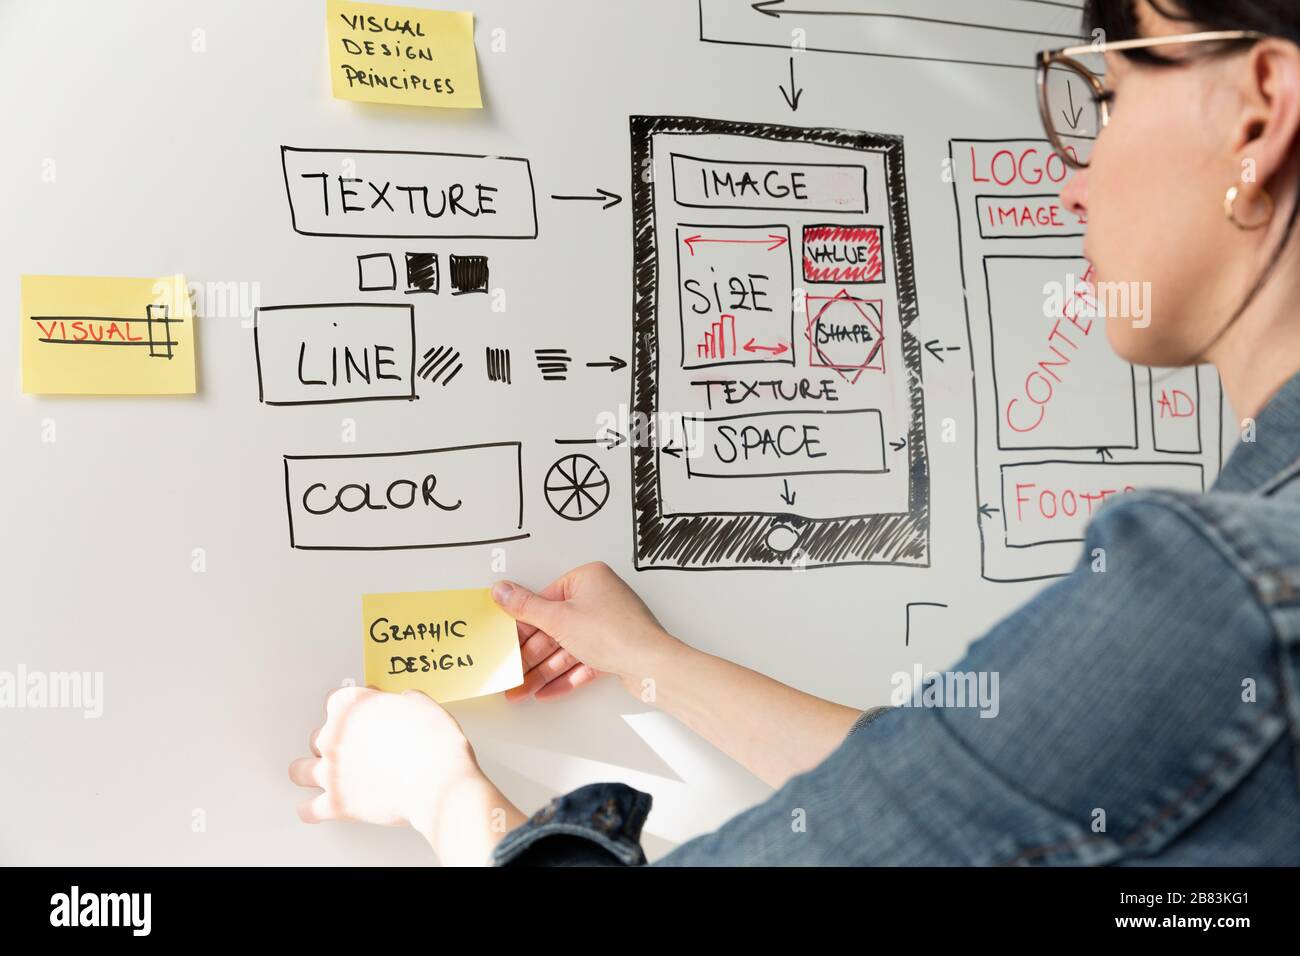 Femmes concepteur de site Web planification créative application développement modèle de mise en page cadre de conception filaire studio . Concept d'expérience utilisateur Banque D'Images